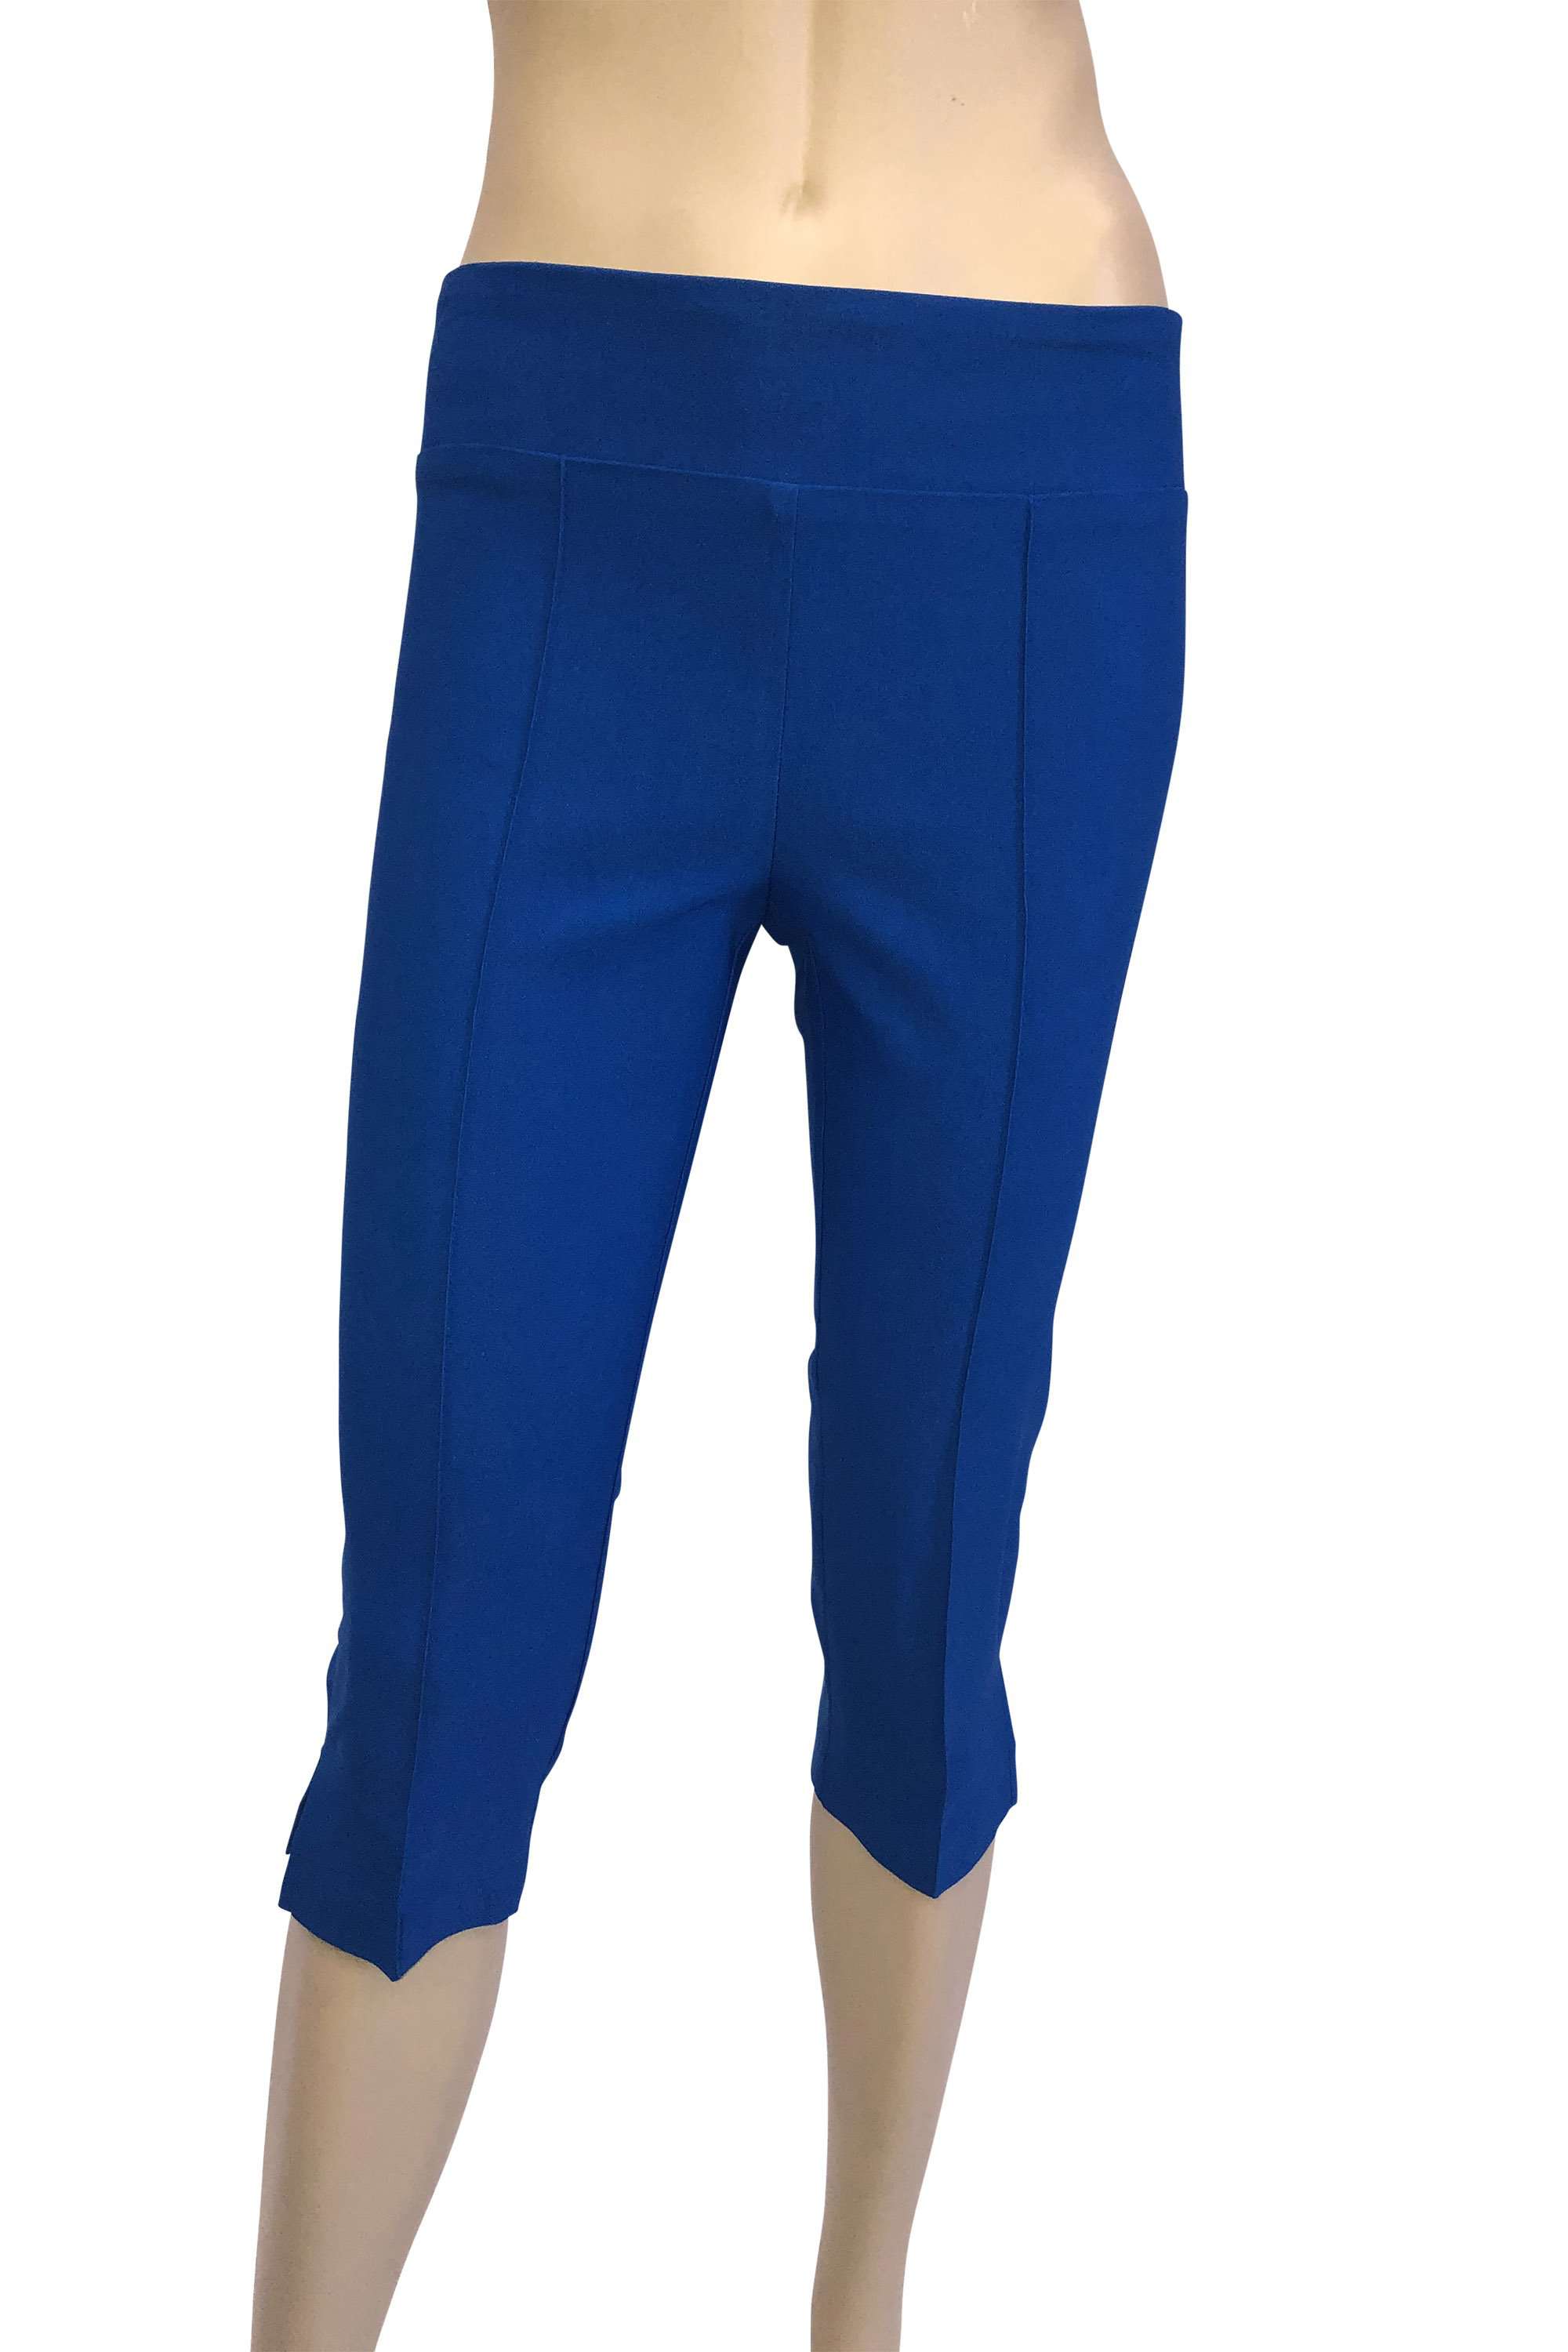 capri blue: Women's Pants